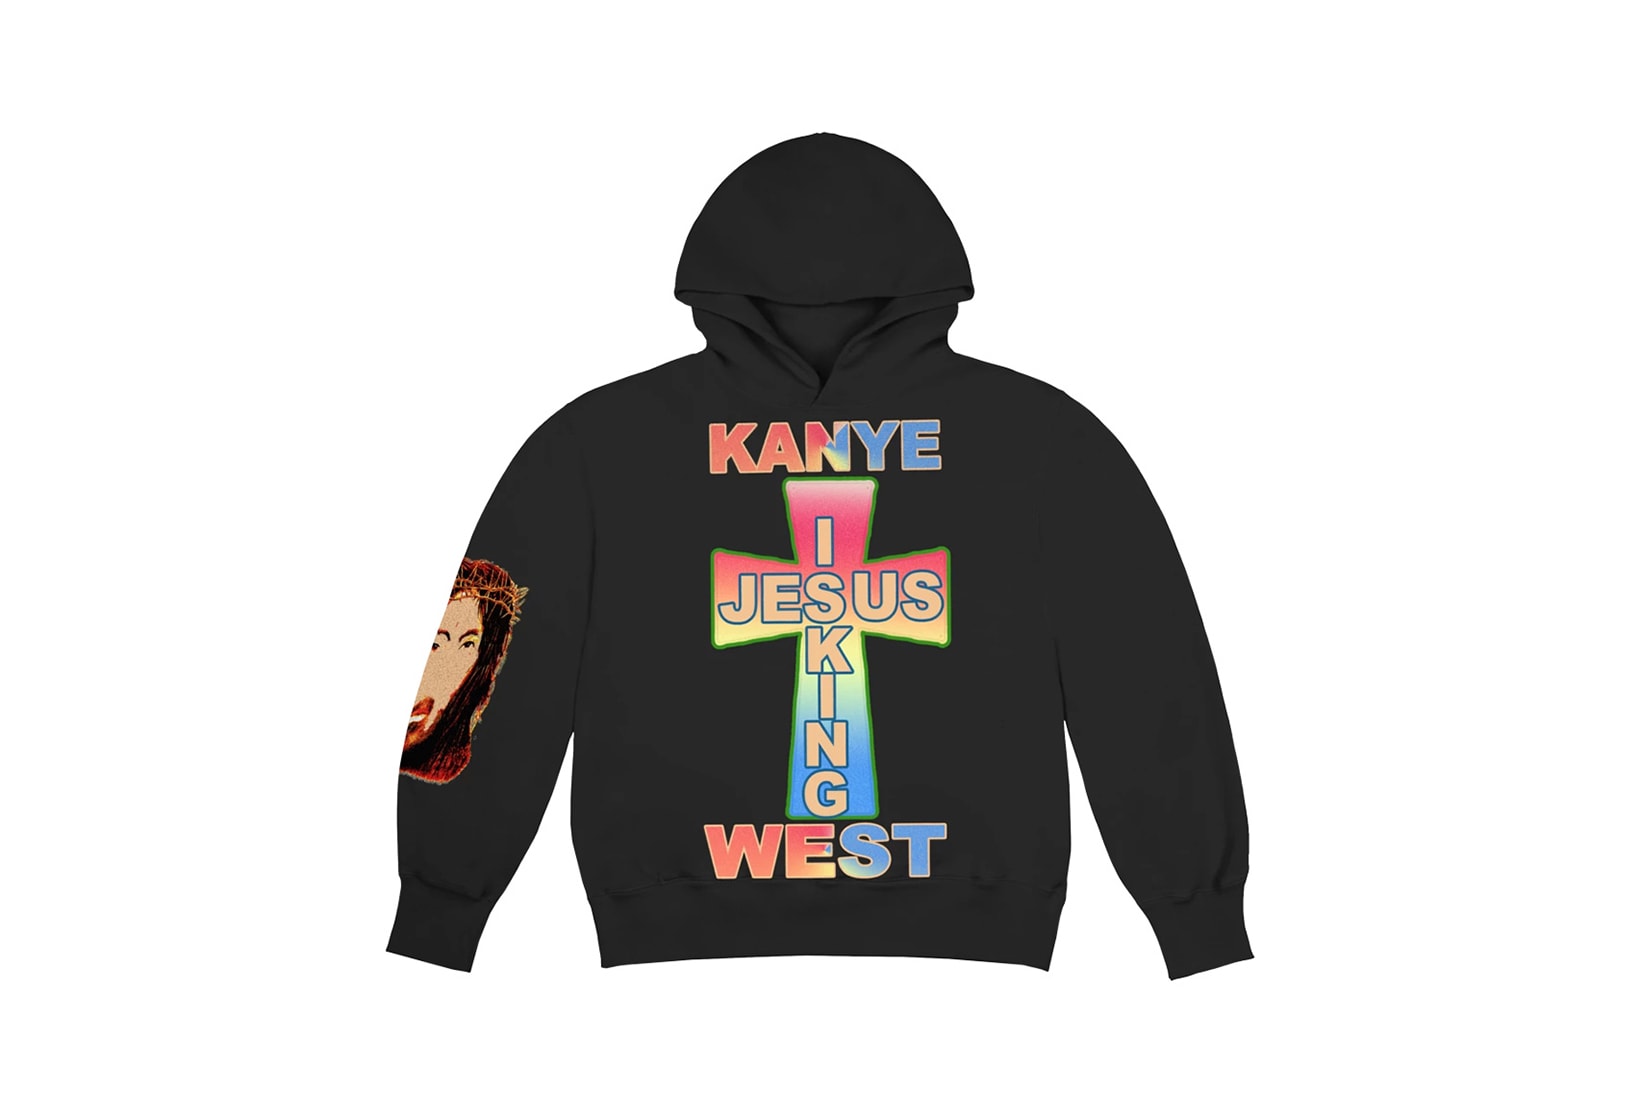 Kanye West Jesus Is King Merch AWGE Cross Hoodie Black